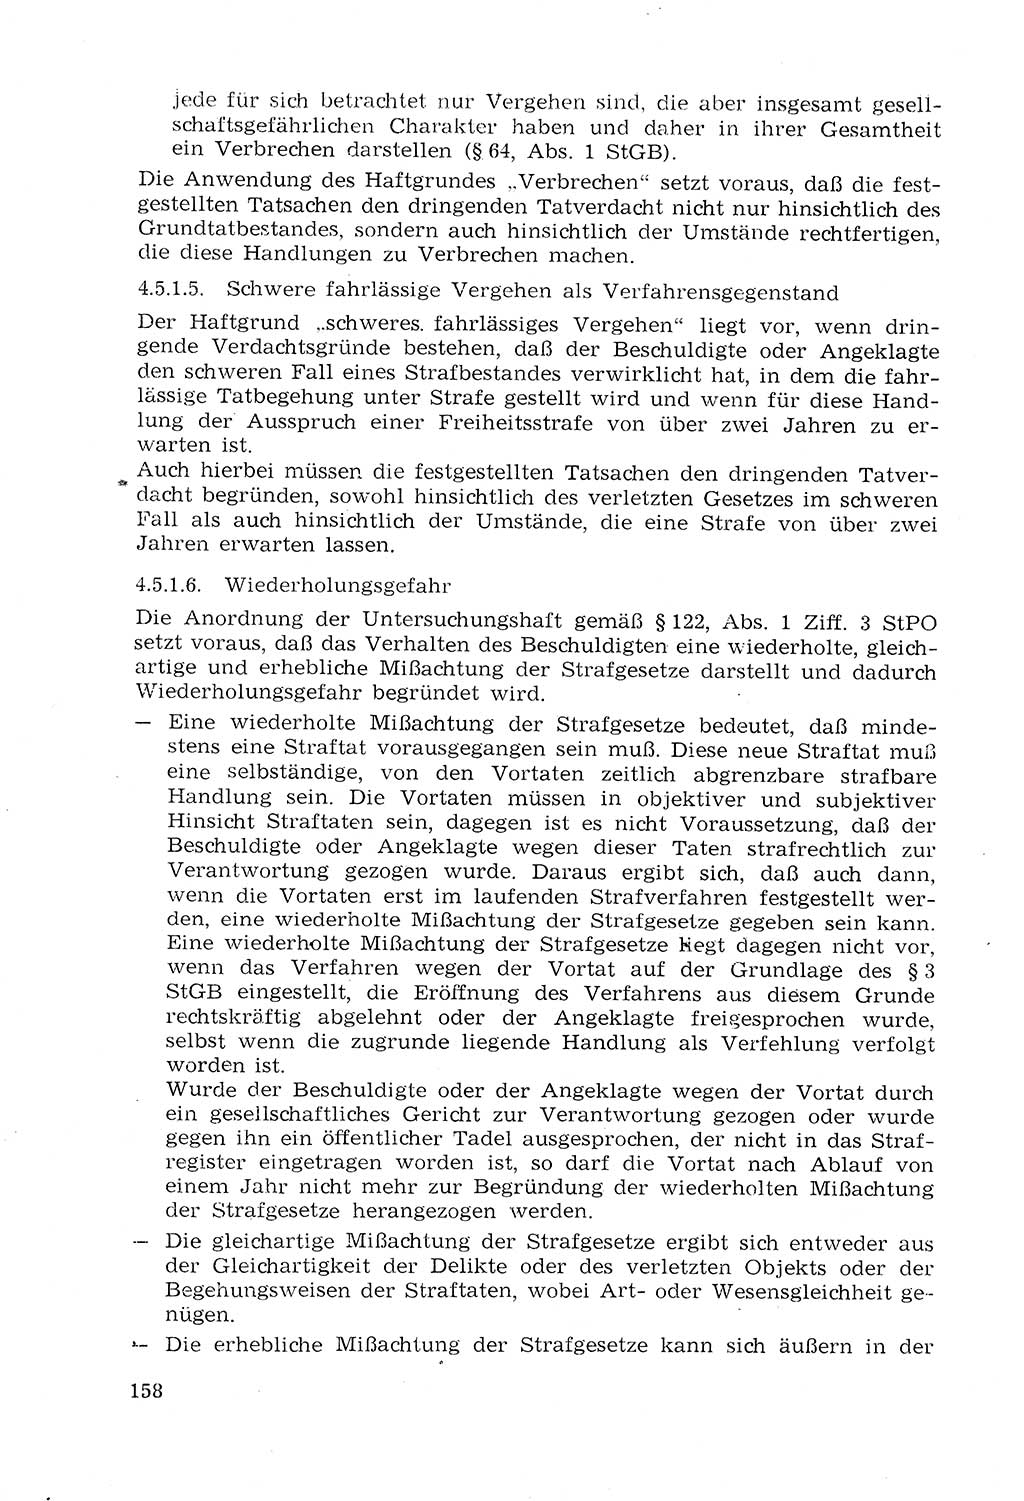 Strafprozeßrecht der DDR (Deutsche Demokratische Republik), Lehrmaterial 1969, Seite 158 (Strafprozeßr. DDR Lehrmat. 1969, S. 158)